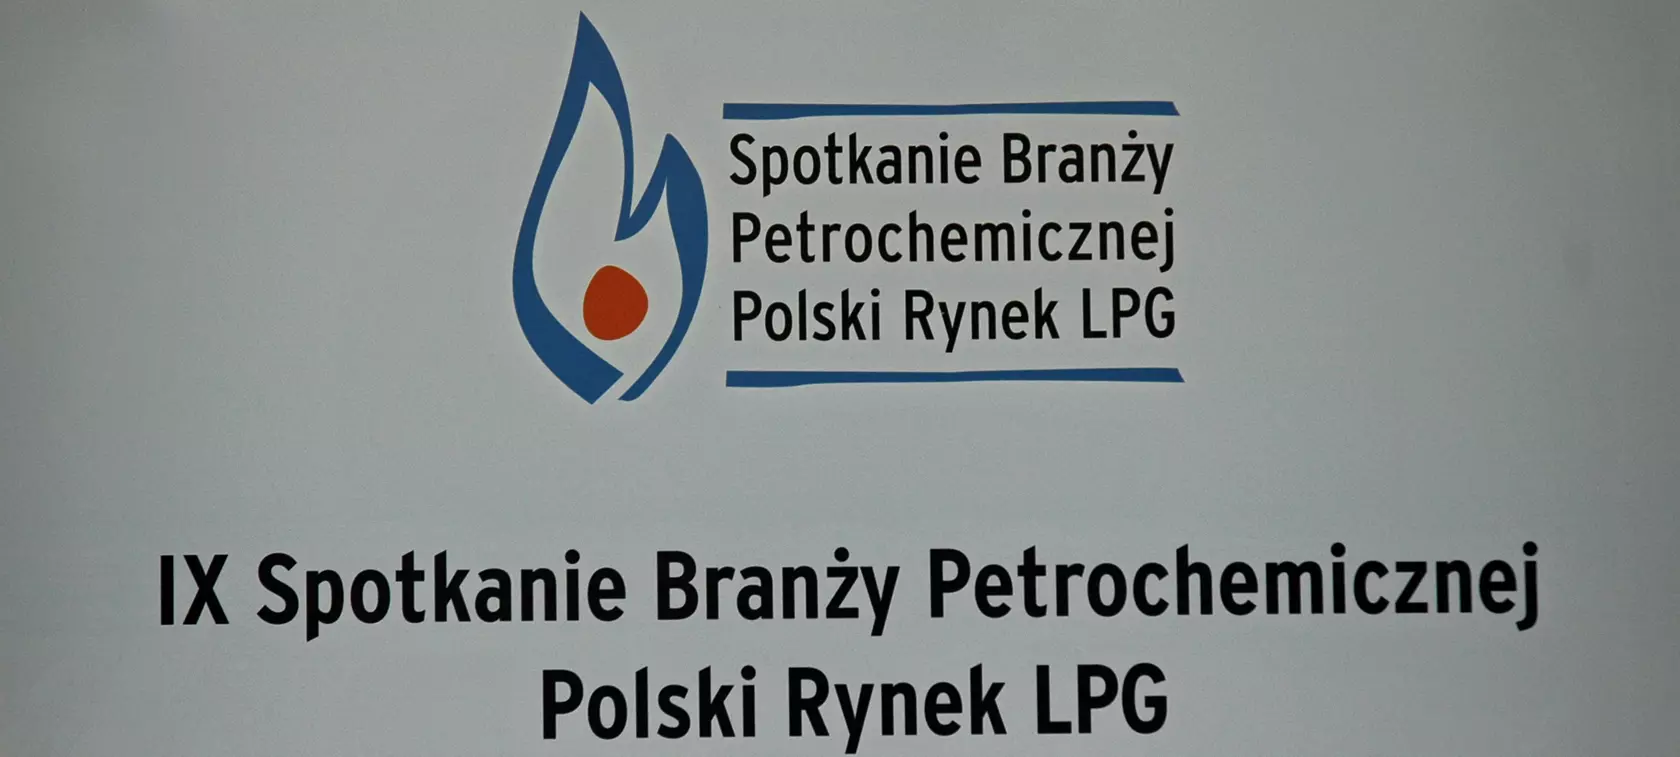 IX Spotkanie Branży Petrochemicznej - Polski Rynek LPG: rekordy i dobre widoki